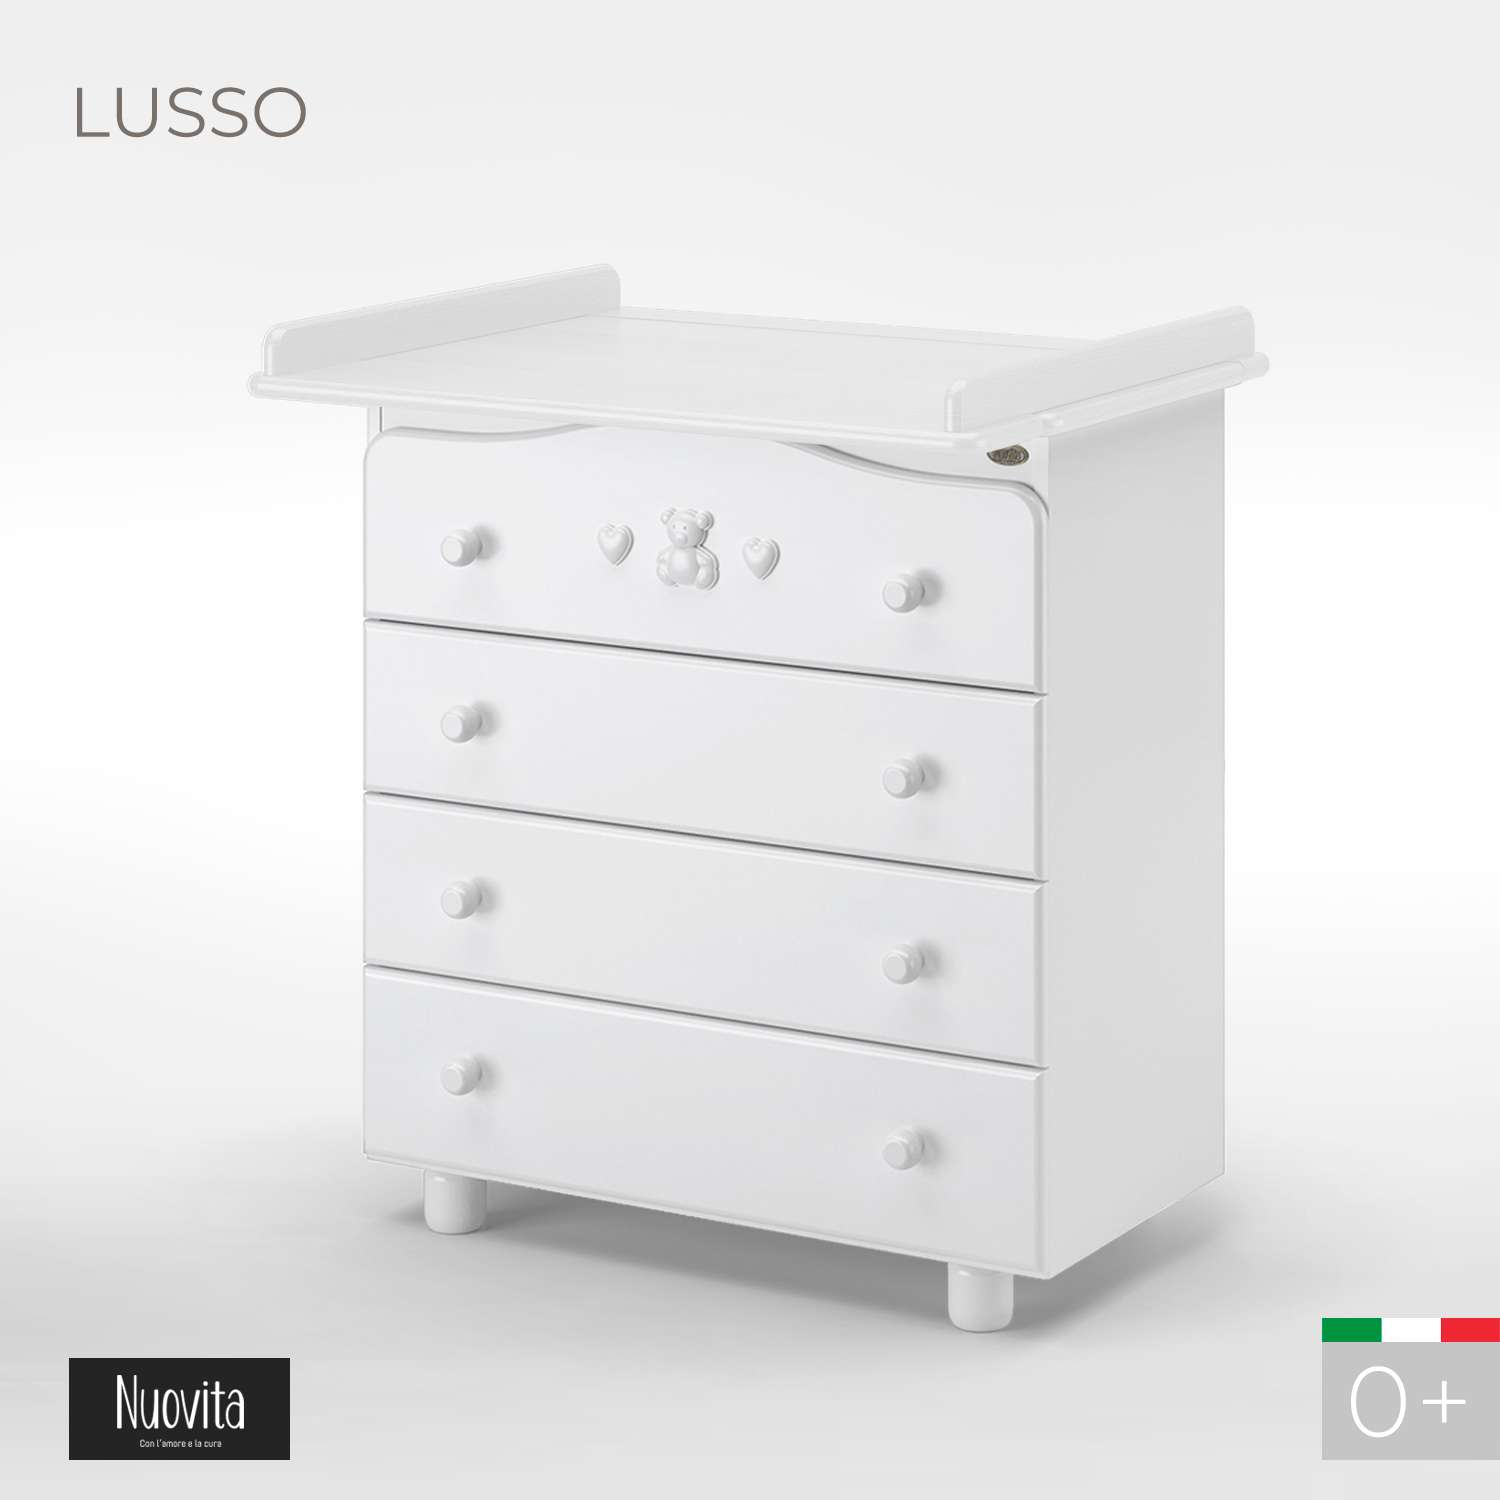 Комод Nuovita Lusso Bianco/Белый - фото 2